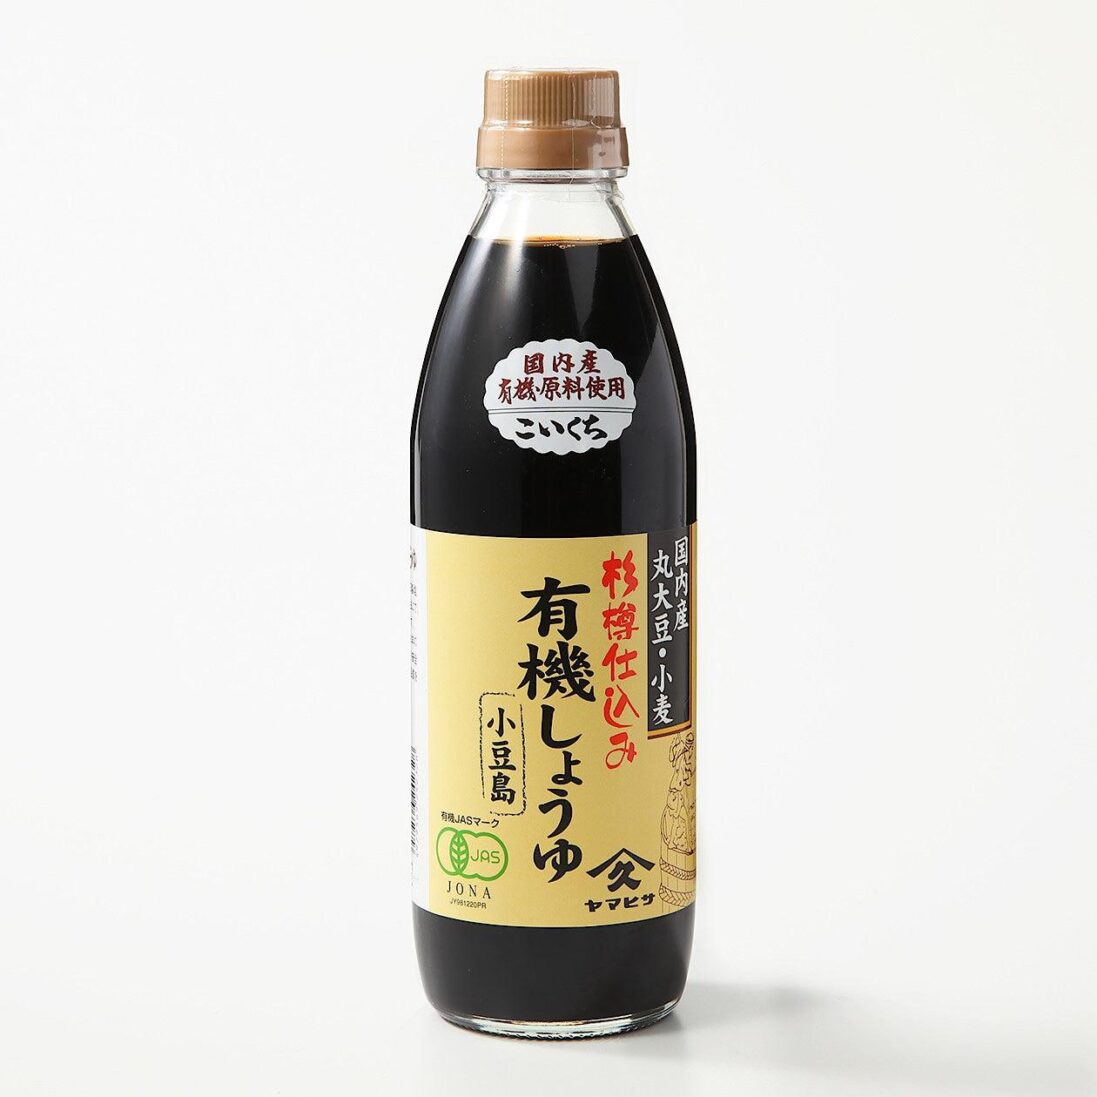 Yamahisa-Koikuchi-Shoyu-Organic-Japanese-Dark-Soy-Sauce-500ml-Japanese-Taste_2048x.jpg